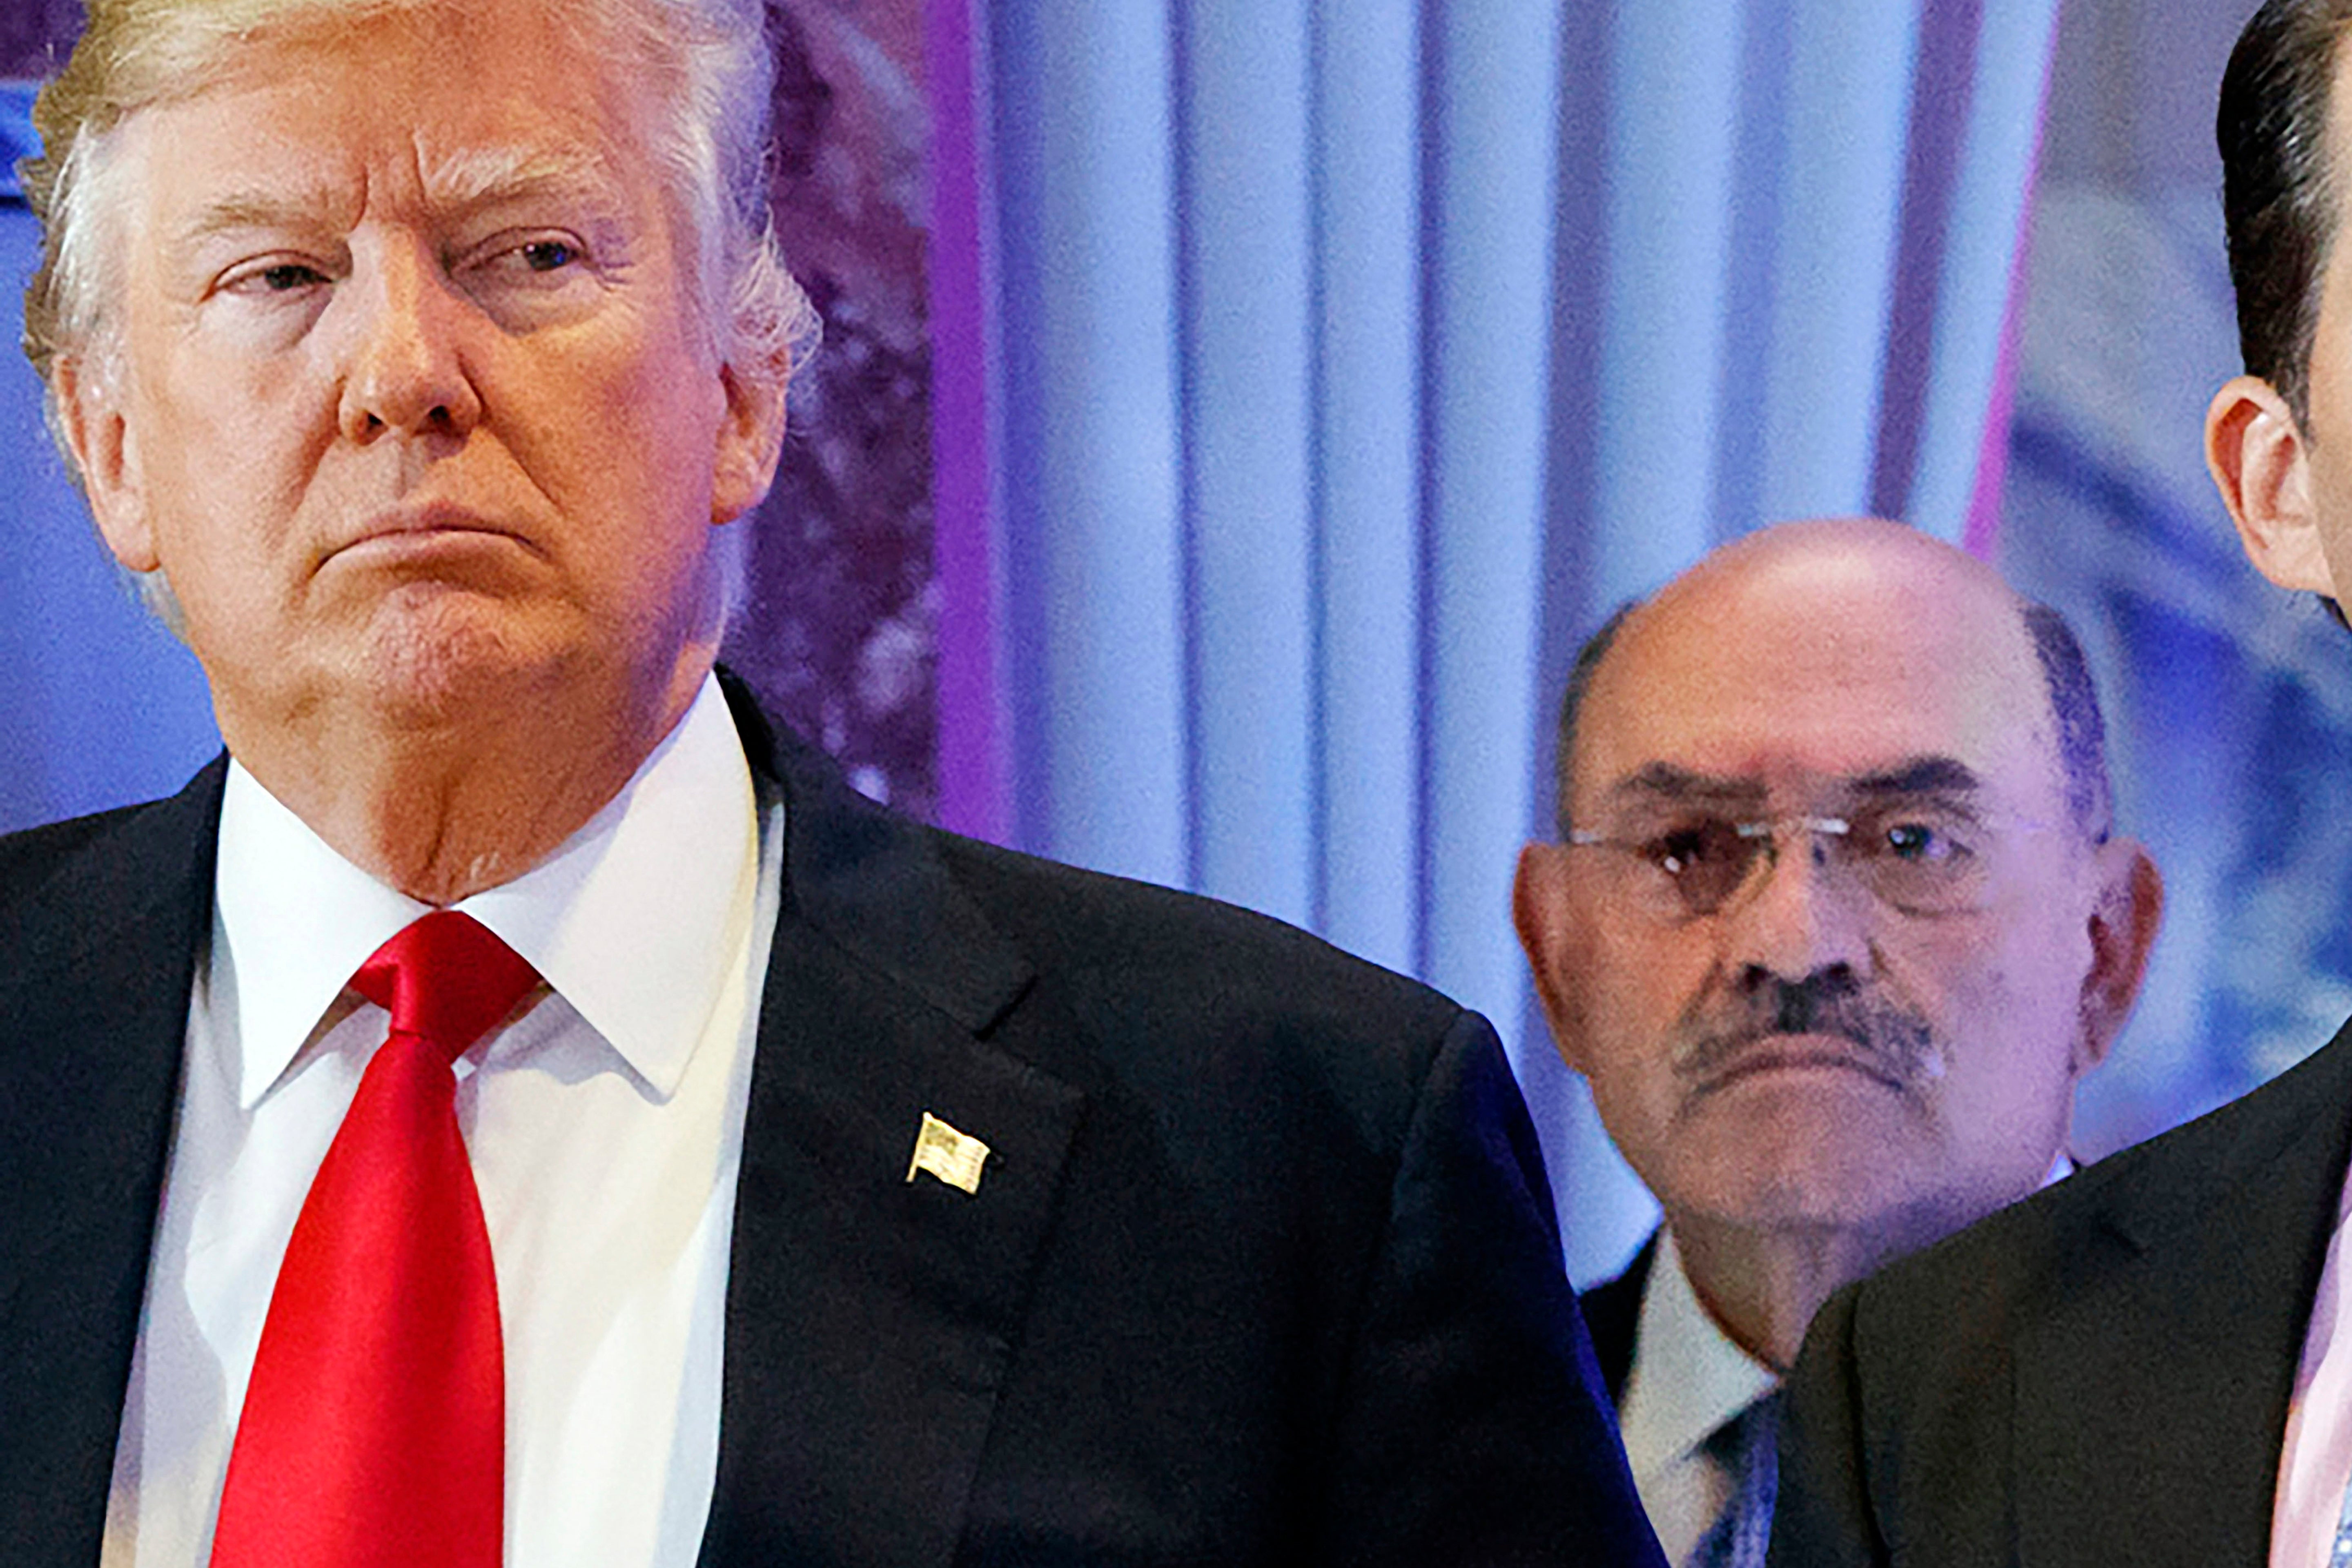 Allen Weisselberg stands next to Donald Trump in 2017